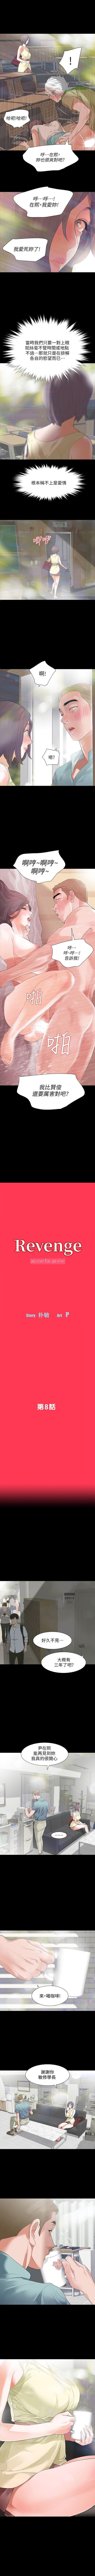 Revenge 1-25 39